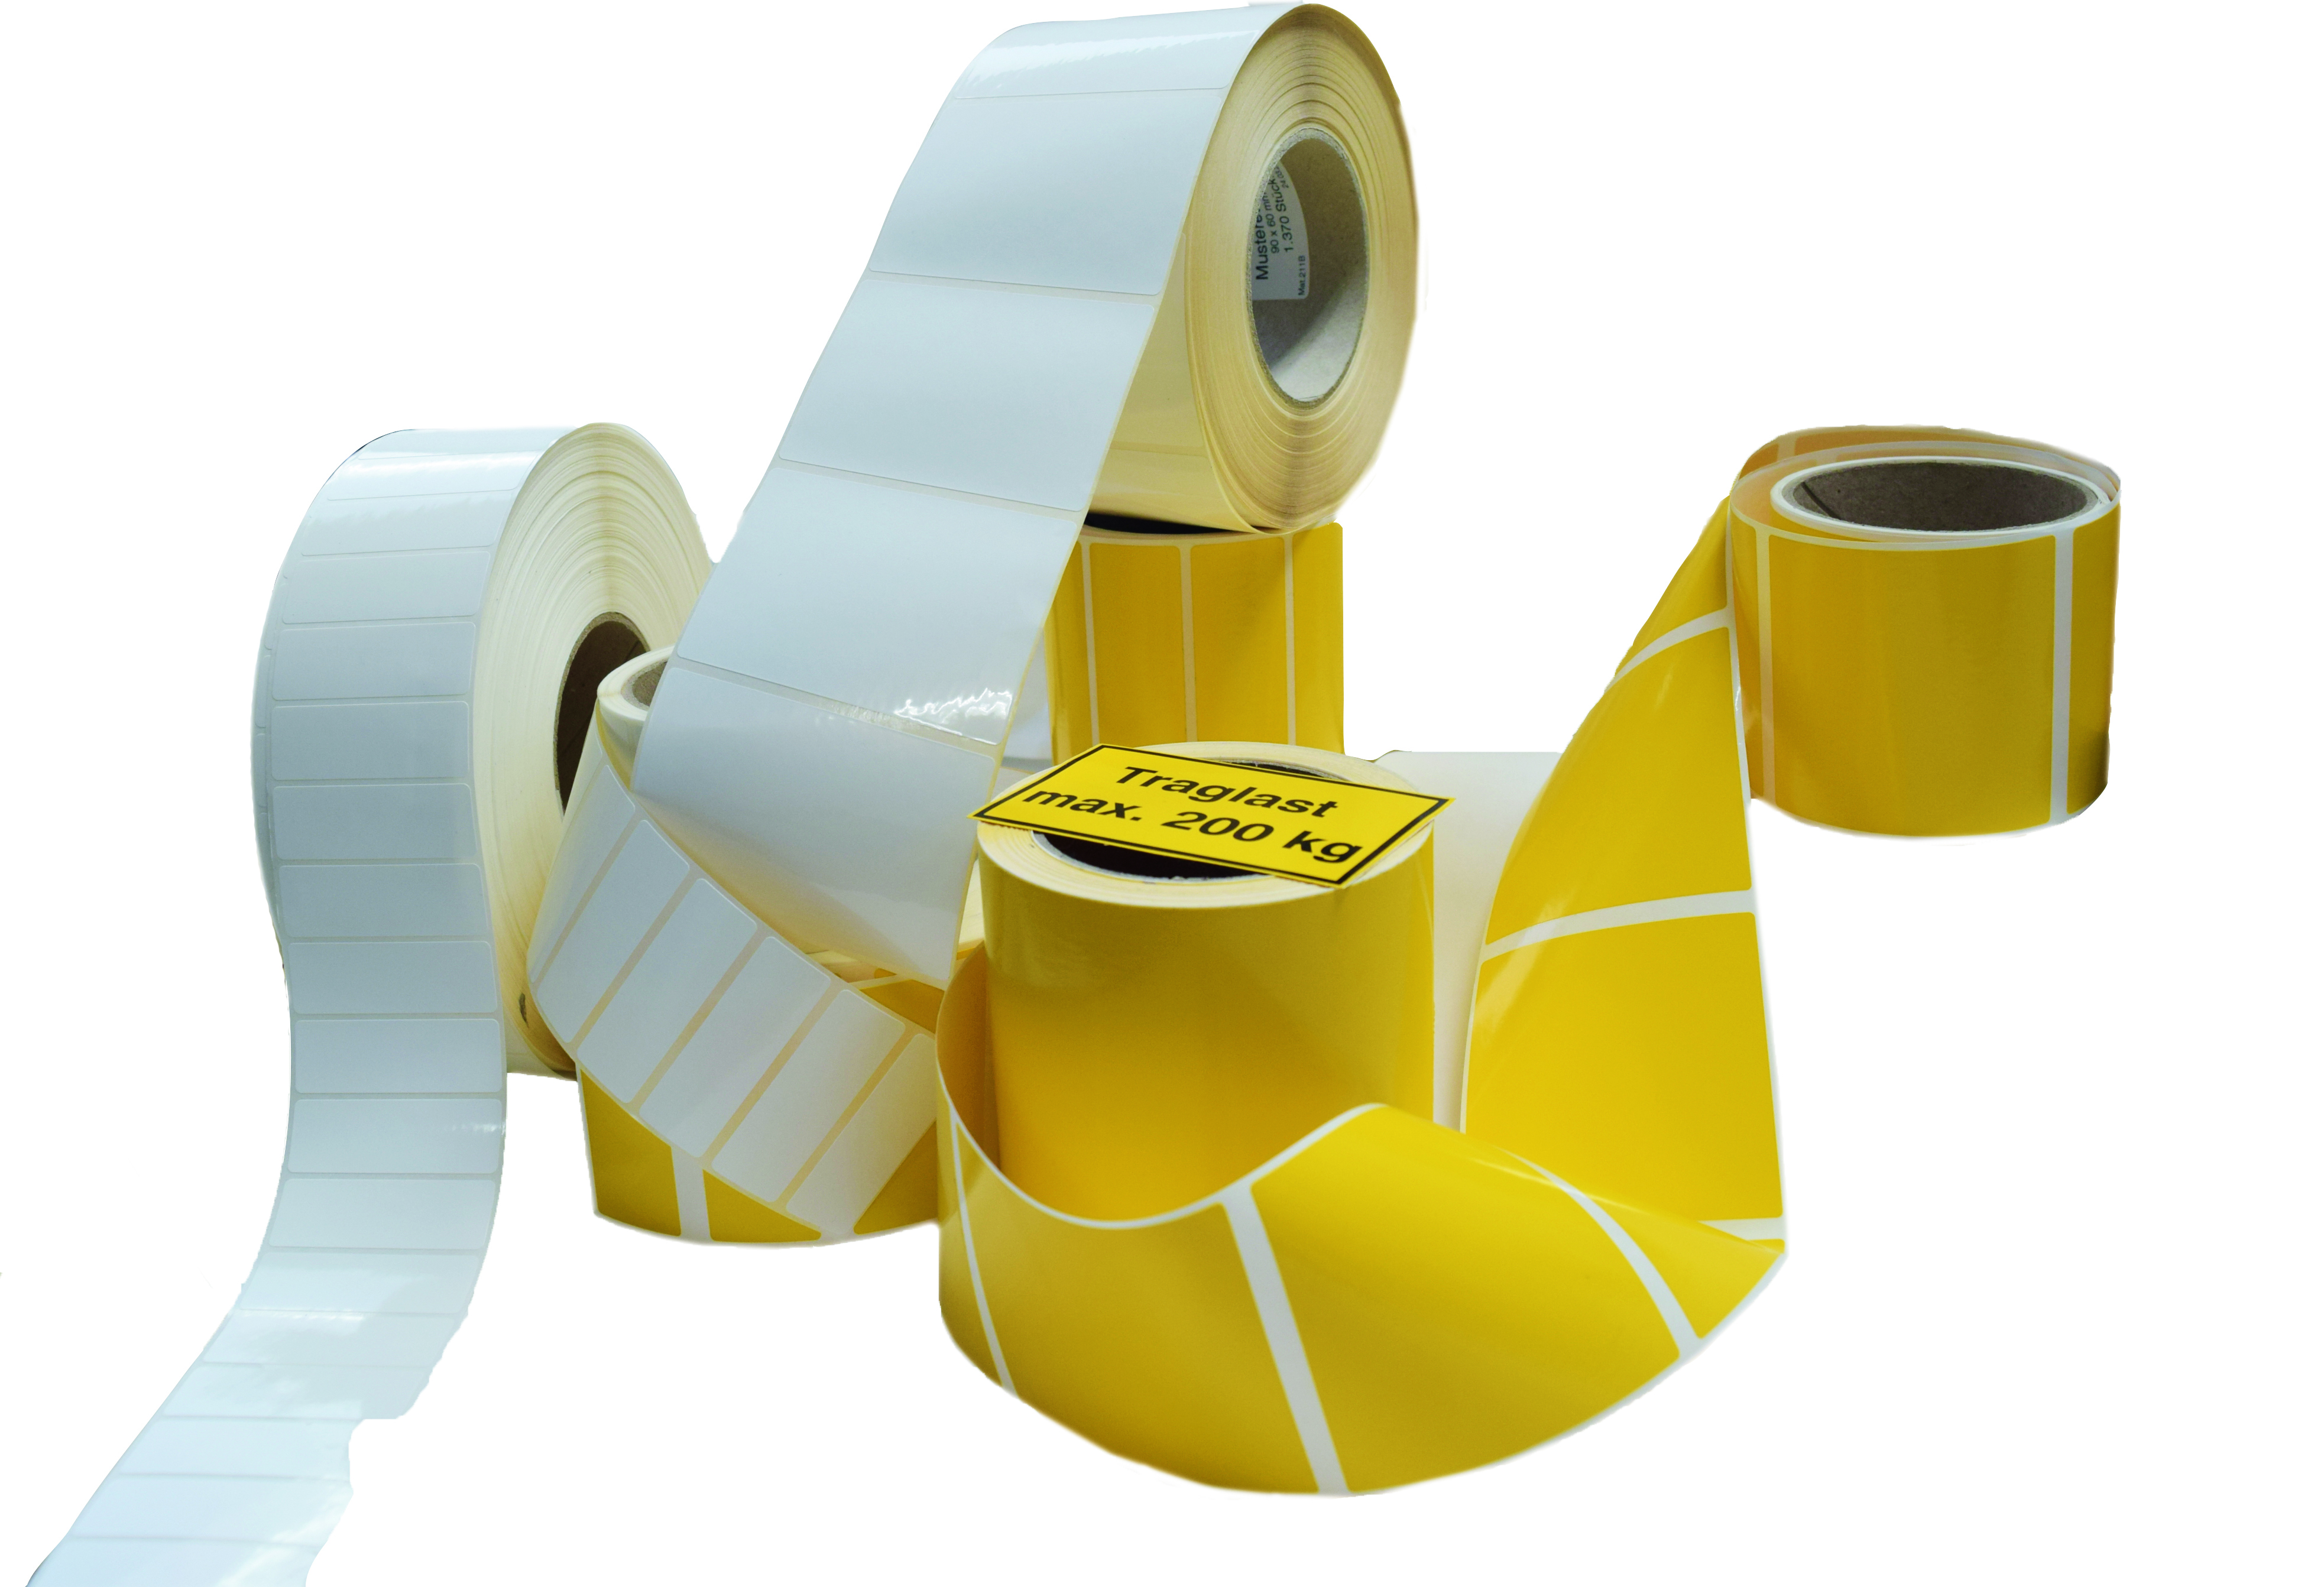 Folienetiketten in weiß und gelb. Rollenetiketten von Marschall produziert.